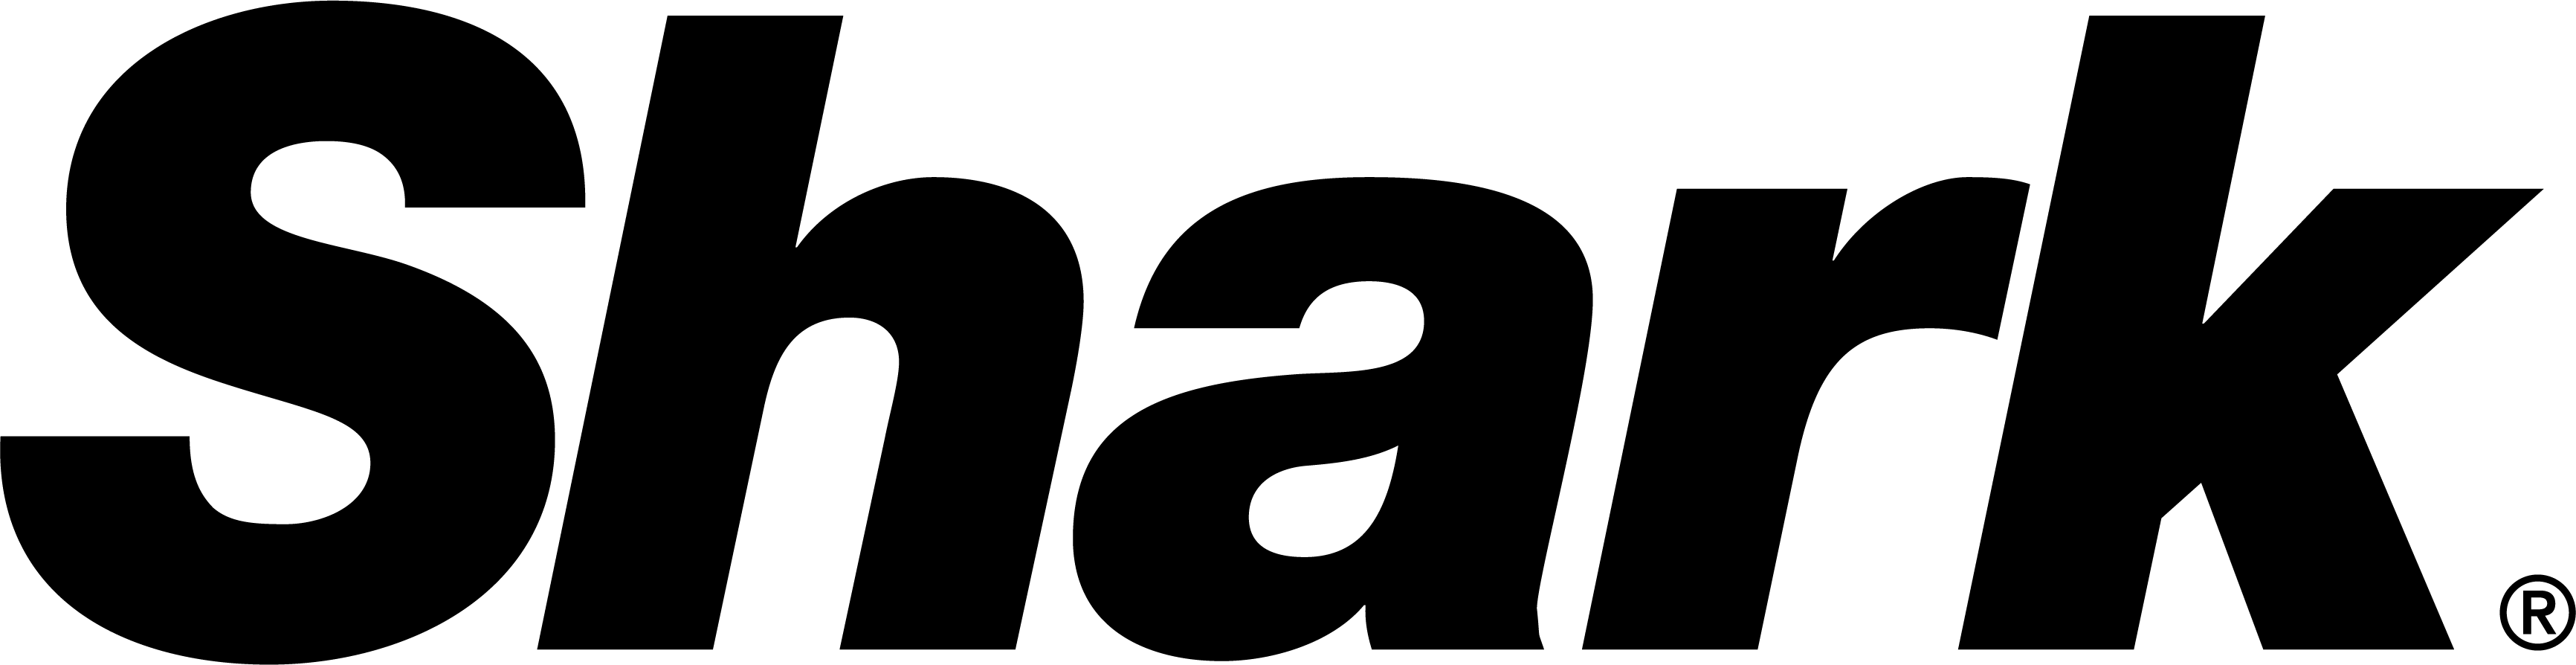 File:V logo noir.png - Wikimedia Commons